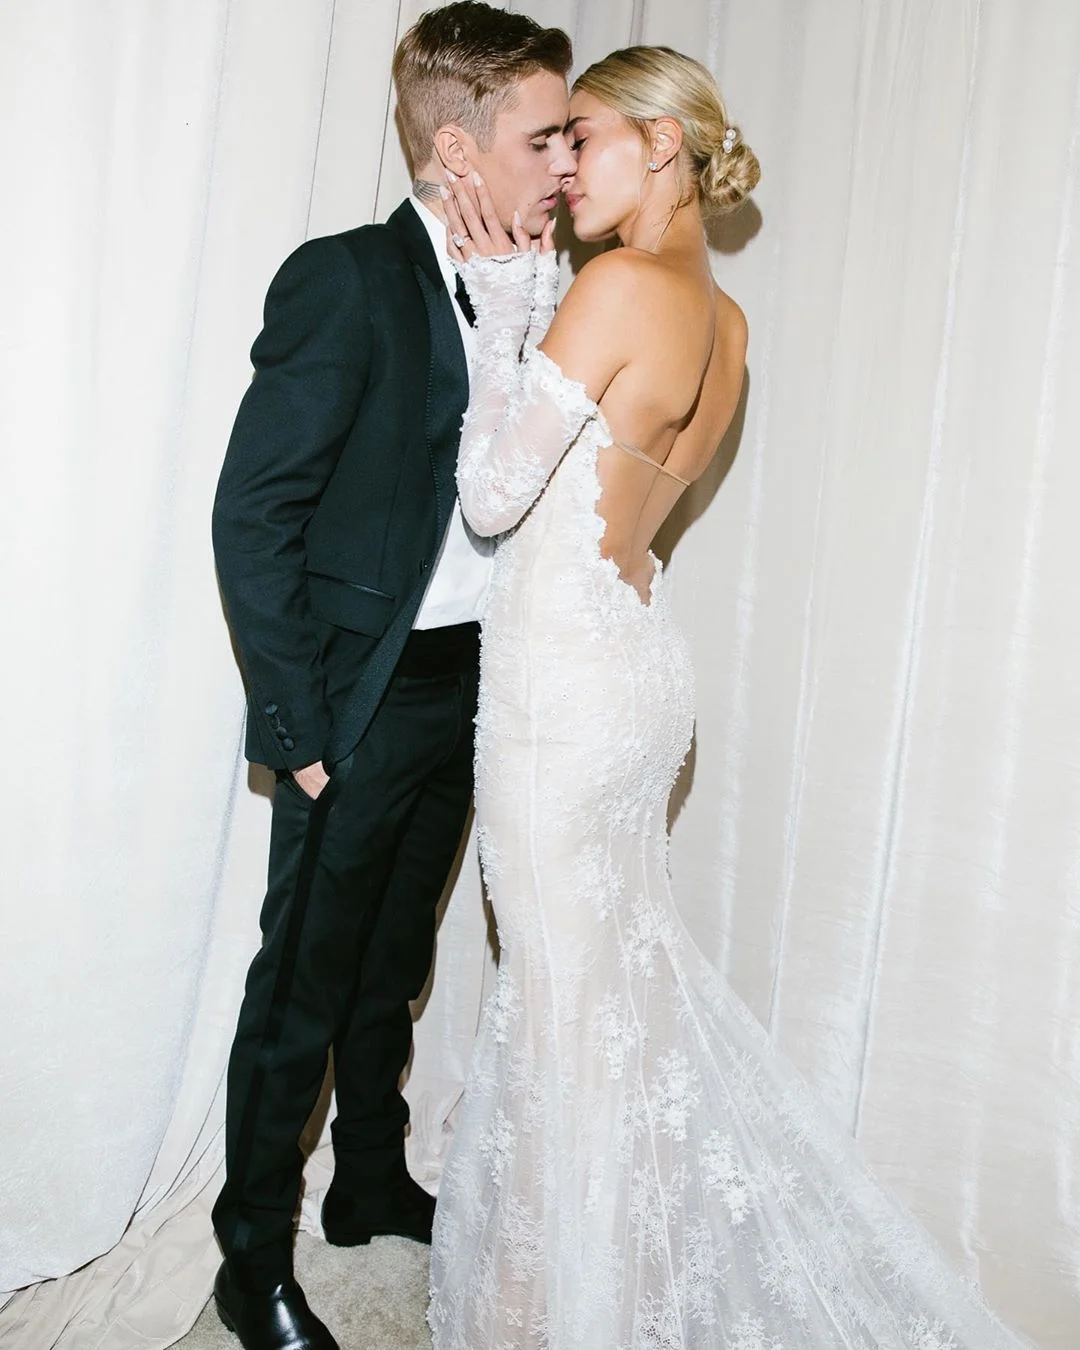 Хейли Бибер поделилась фото со свадьбы, на которых можно увидеть ее роскошное платье - фото 453220